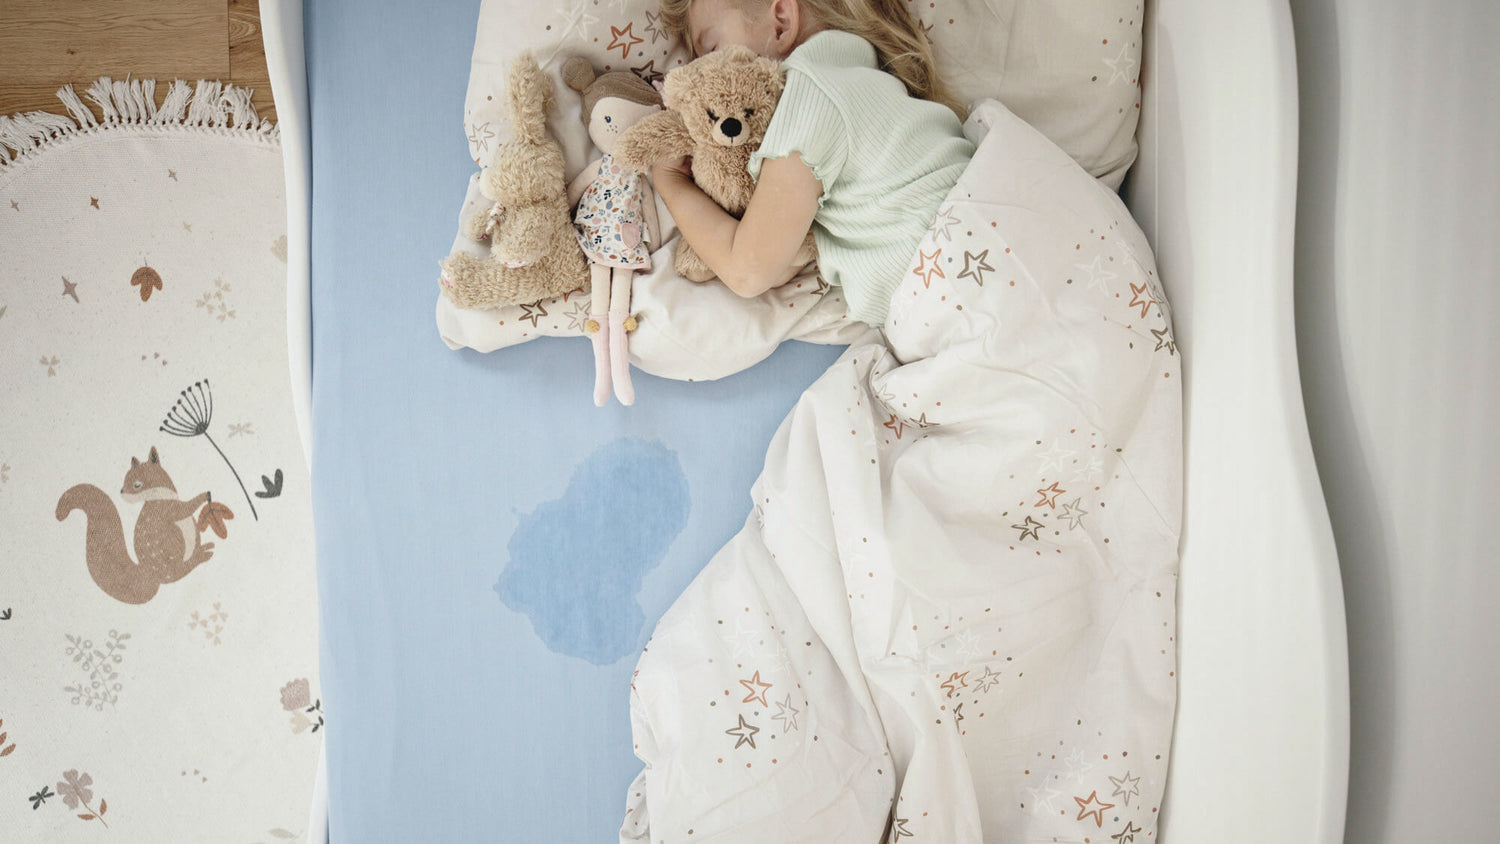 Mädchen schläft im Bett mit Urinfleck am Rand